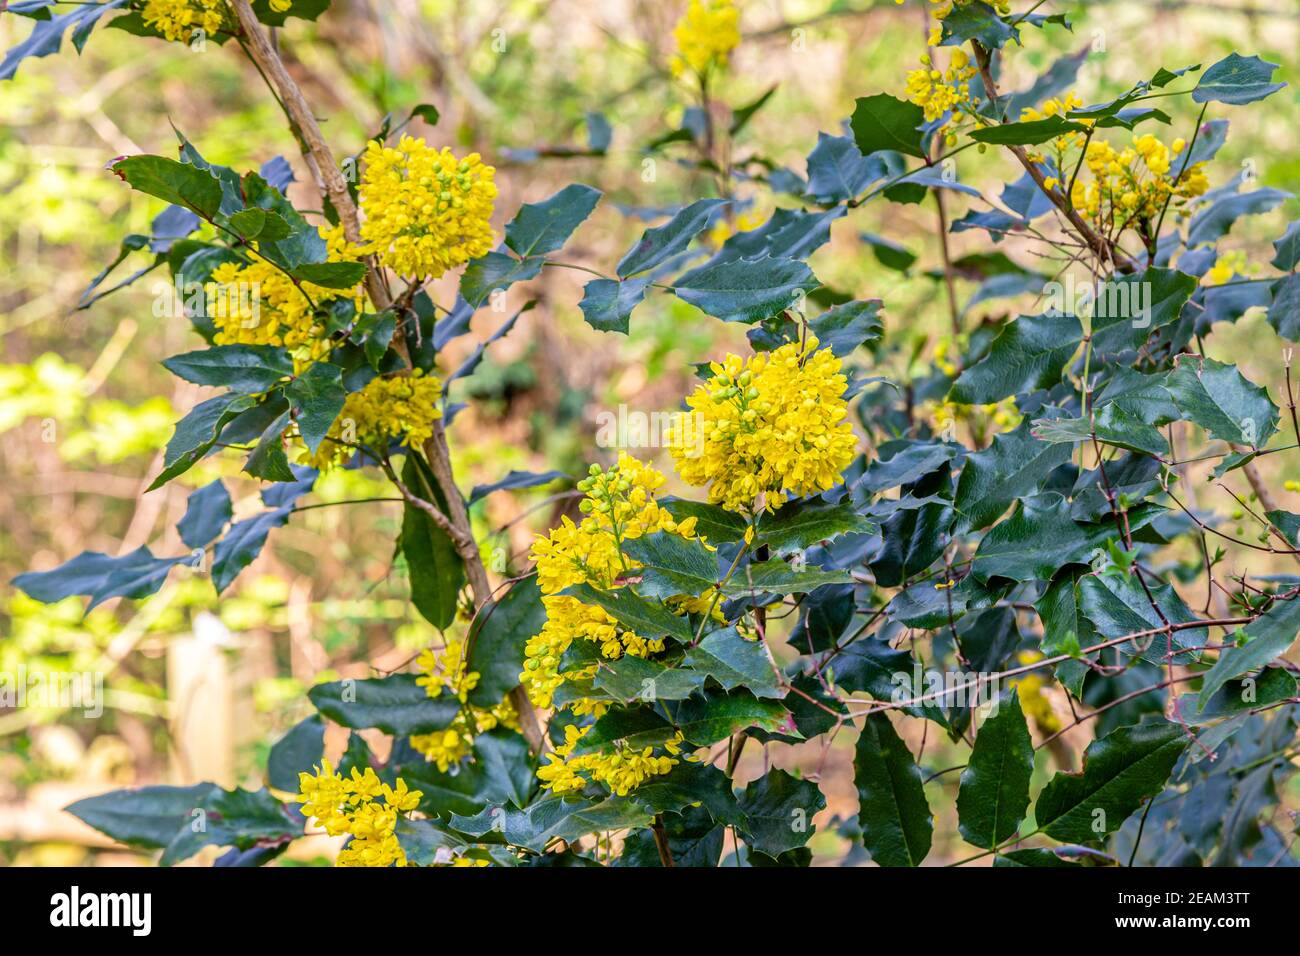 mahonia or oregon grape, Mahonia aquifolium Stock Photo